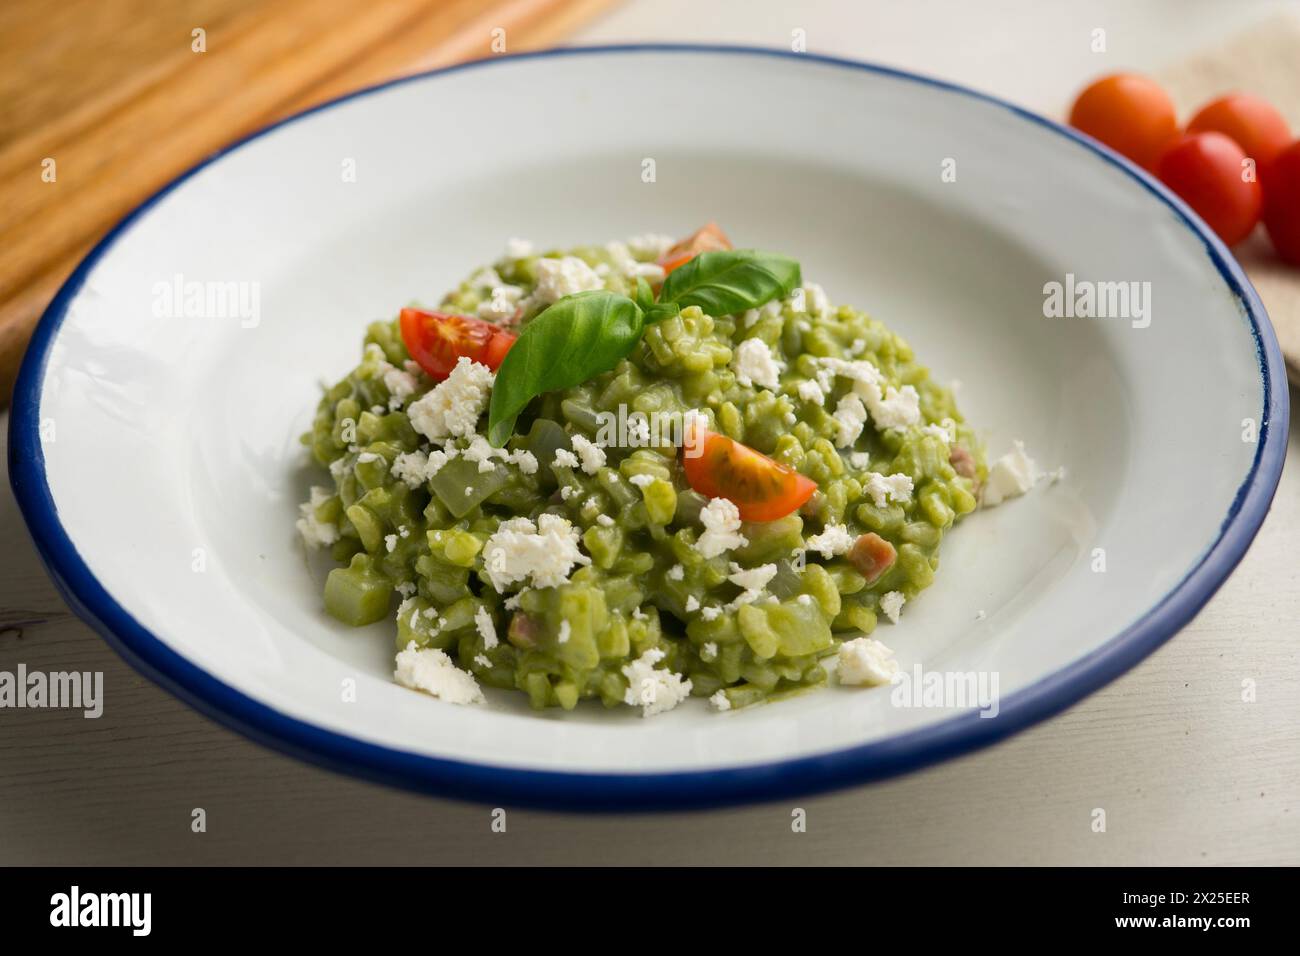 Risotto cremoso all'italiana con spinaci e formaggio. Ricetta tradizionale italiana. Foto Stock